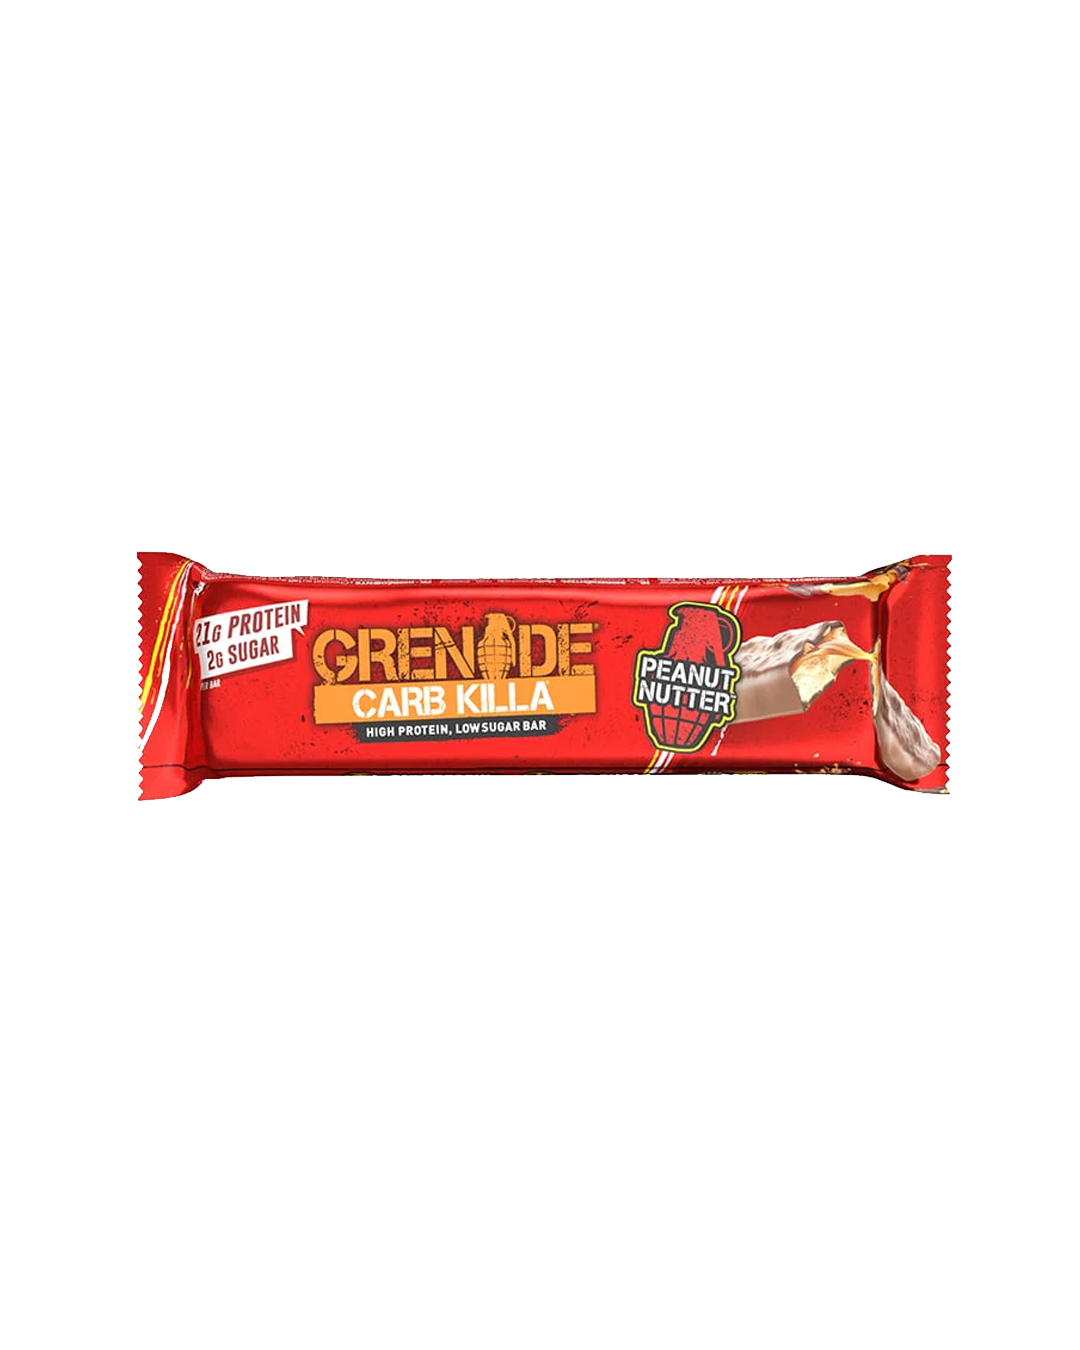 Grenade_Peanut_Butter_60g